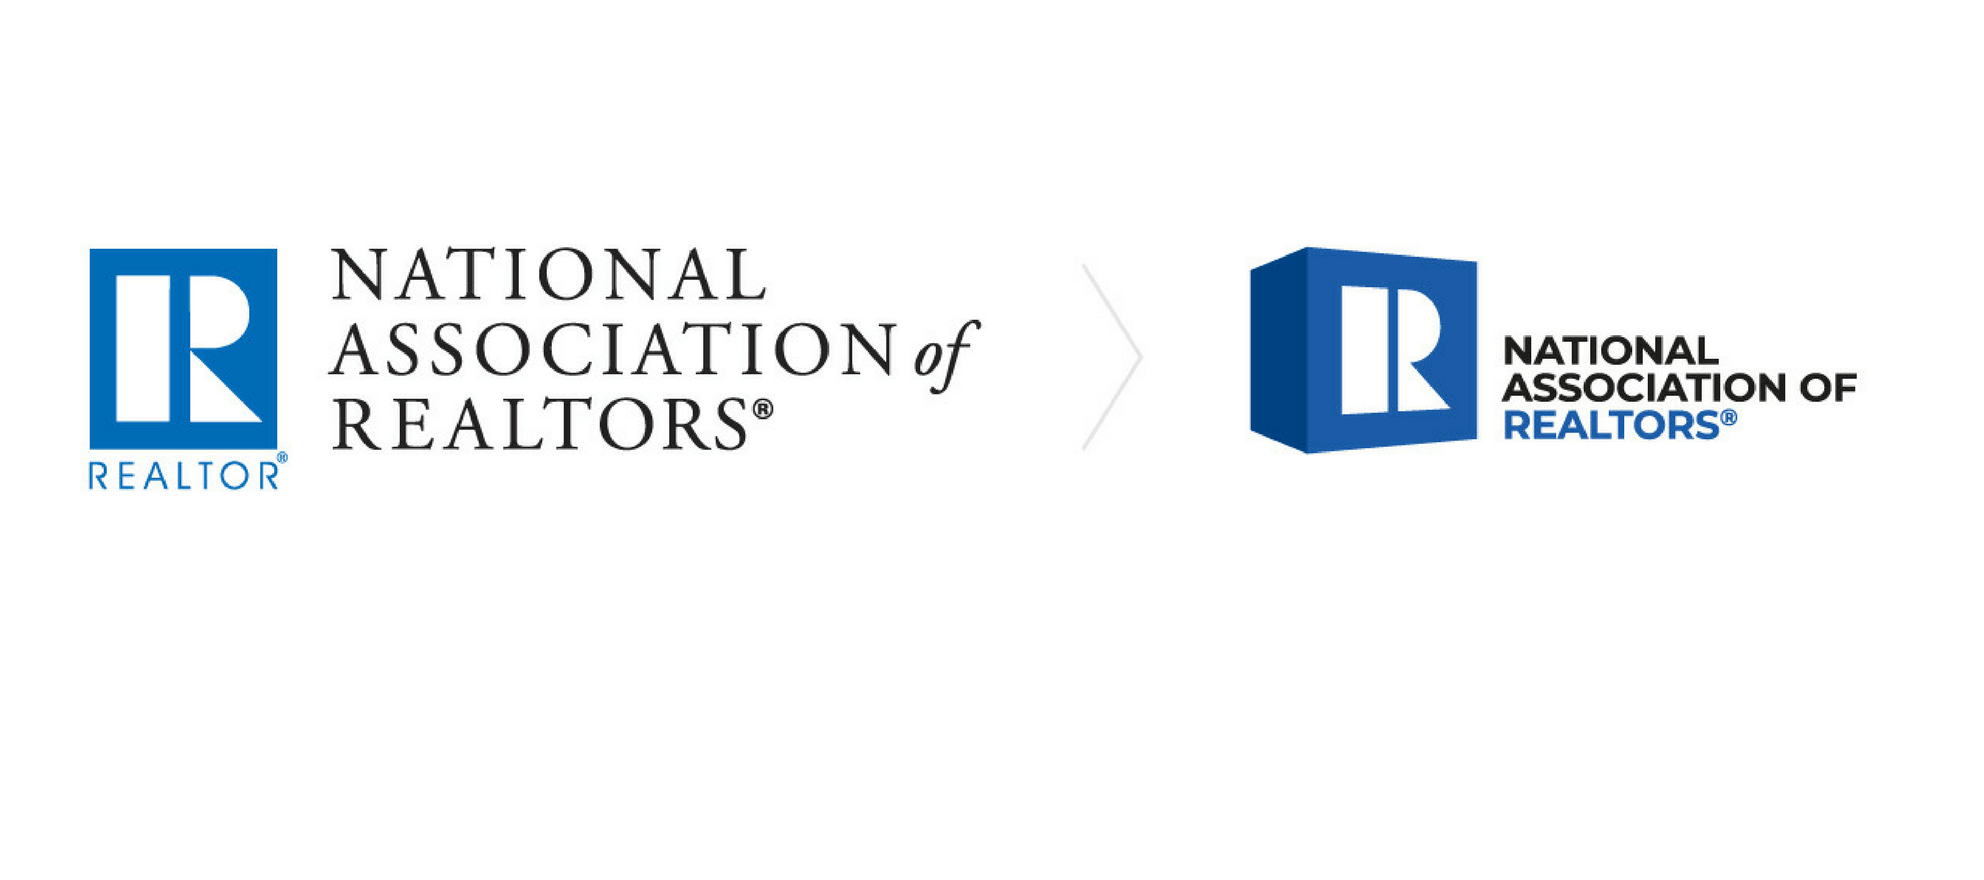 Three-Dimensional Logo - Realtors React To NAR's New Three-Dimensional Logo